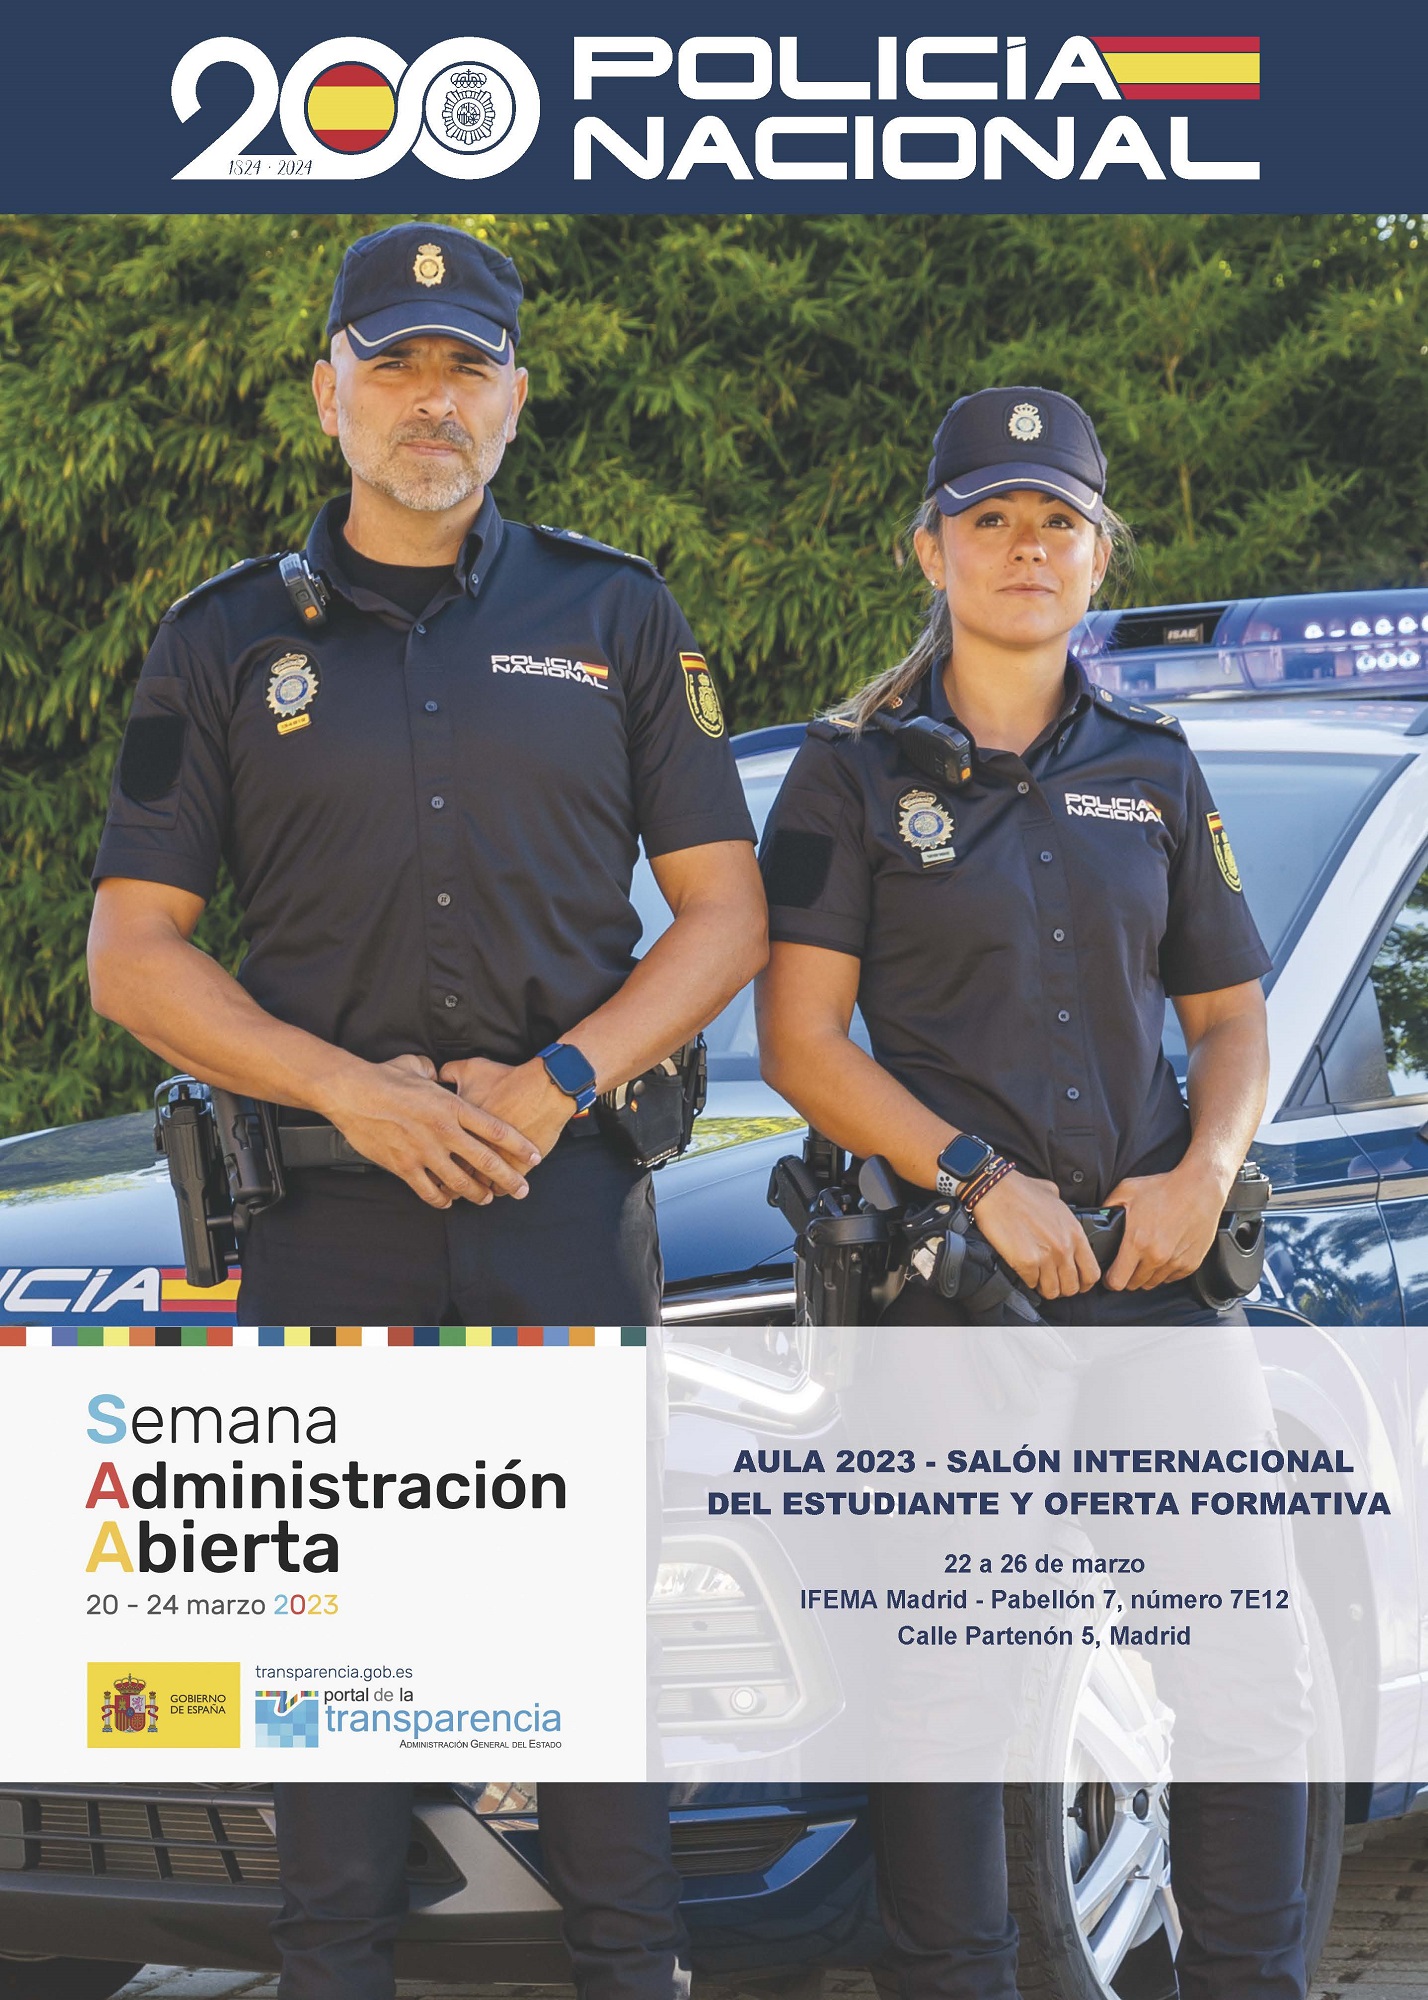 Cartel de Aula 2023 - Salón internacional del estudiante y oferta formativa celebrado en IFEMA, Madrid.